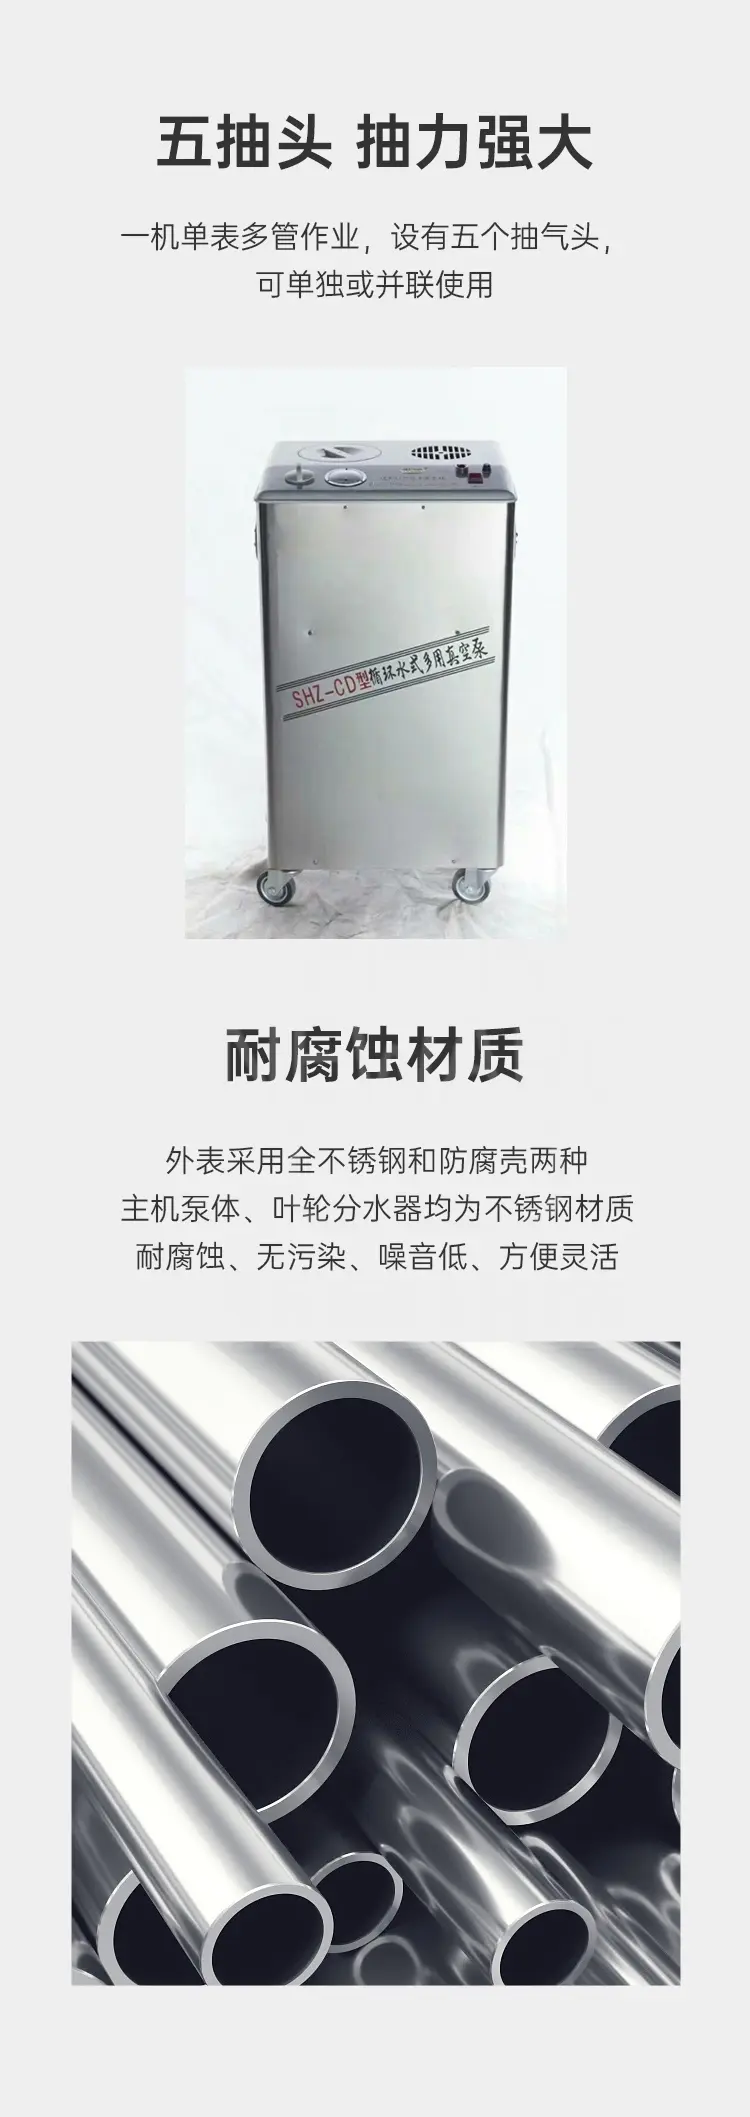 SHZ-CD全不锈钢外壳五抽循环水真空泵商品介绍2